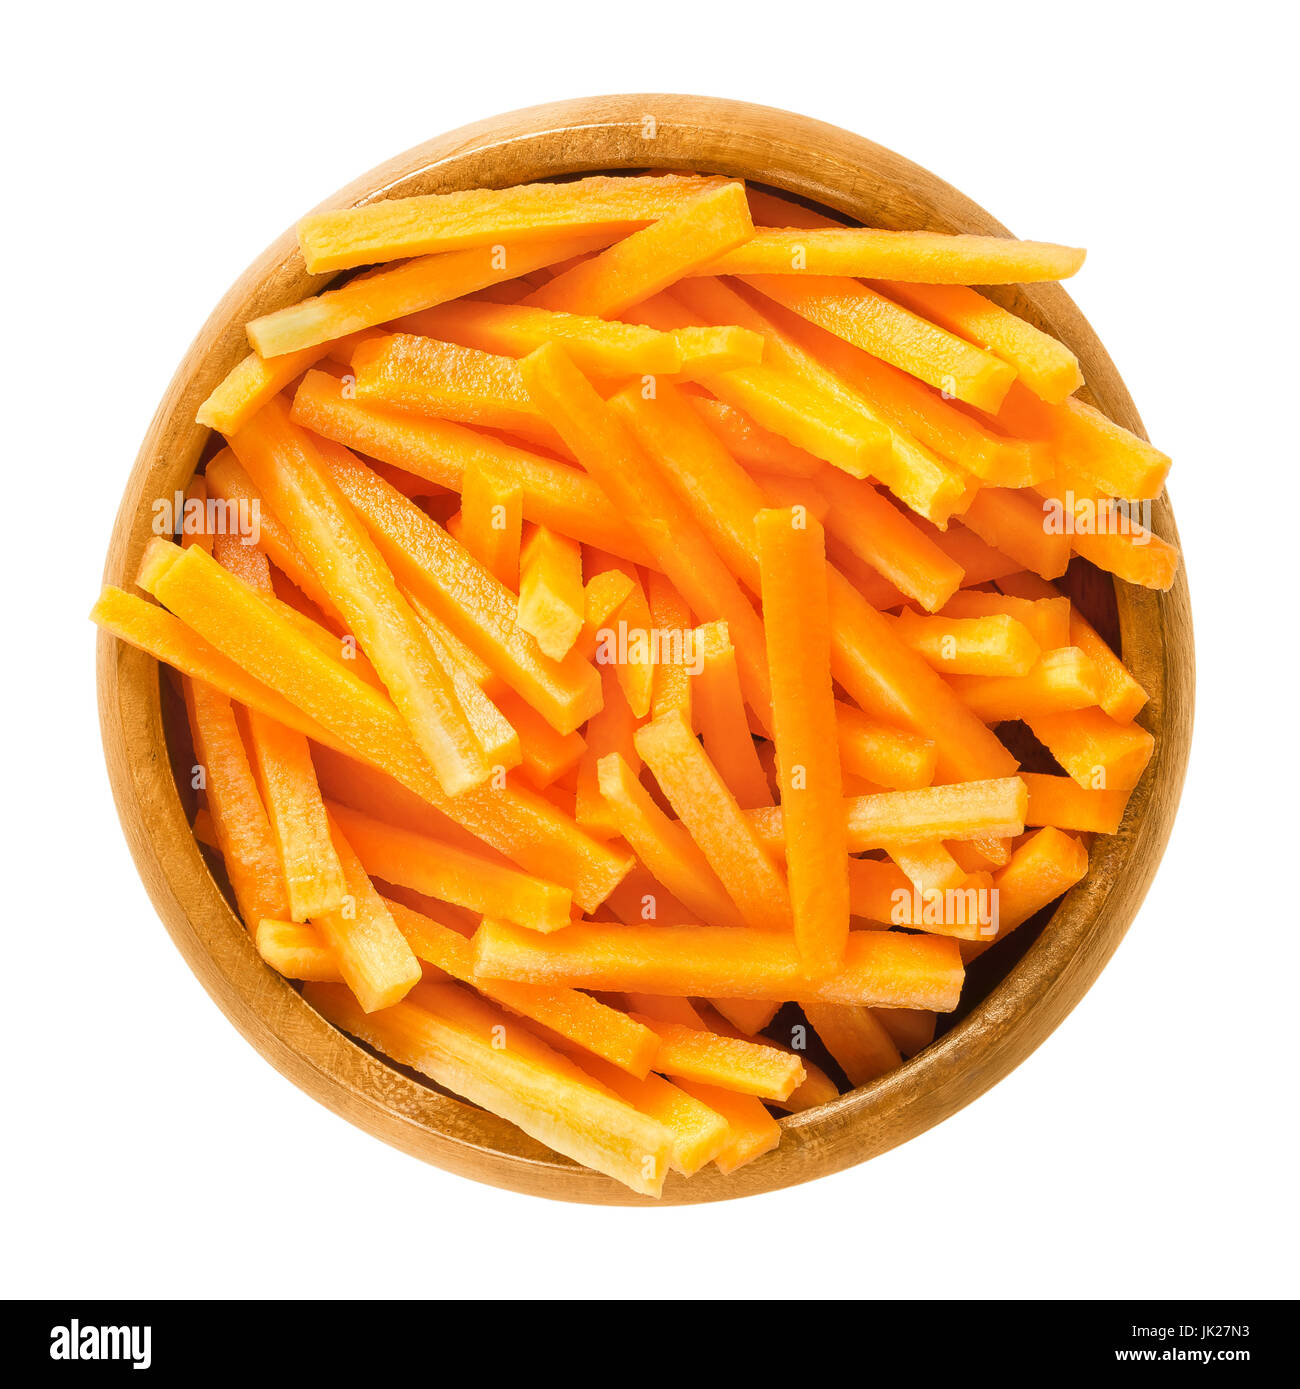 Bâtonnets de carottes dans un bol en bois. Des bandes de crisp Daucus carota, un légume-racine avec la couleur orange. Racine pivotante comestible morceaux. Photo. Banque D'Images